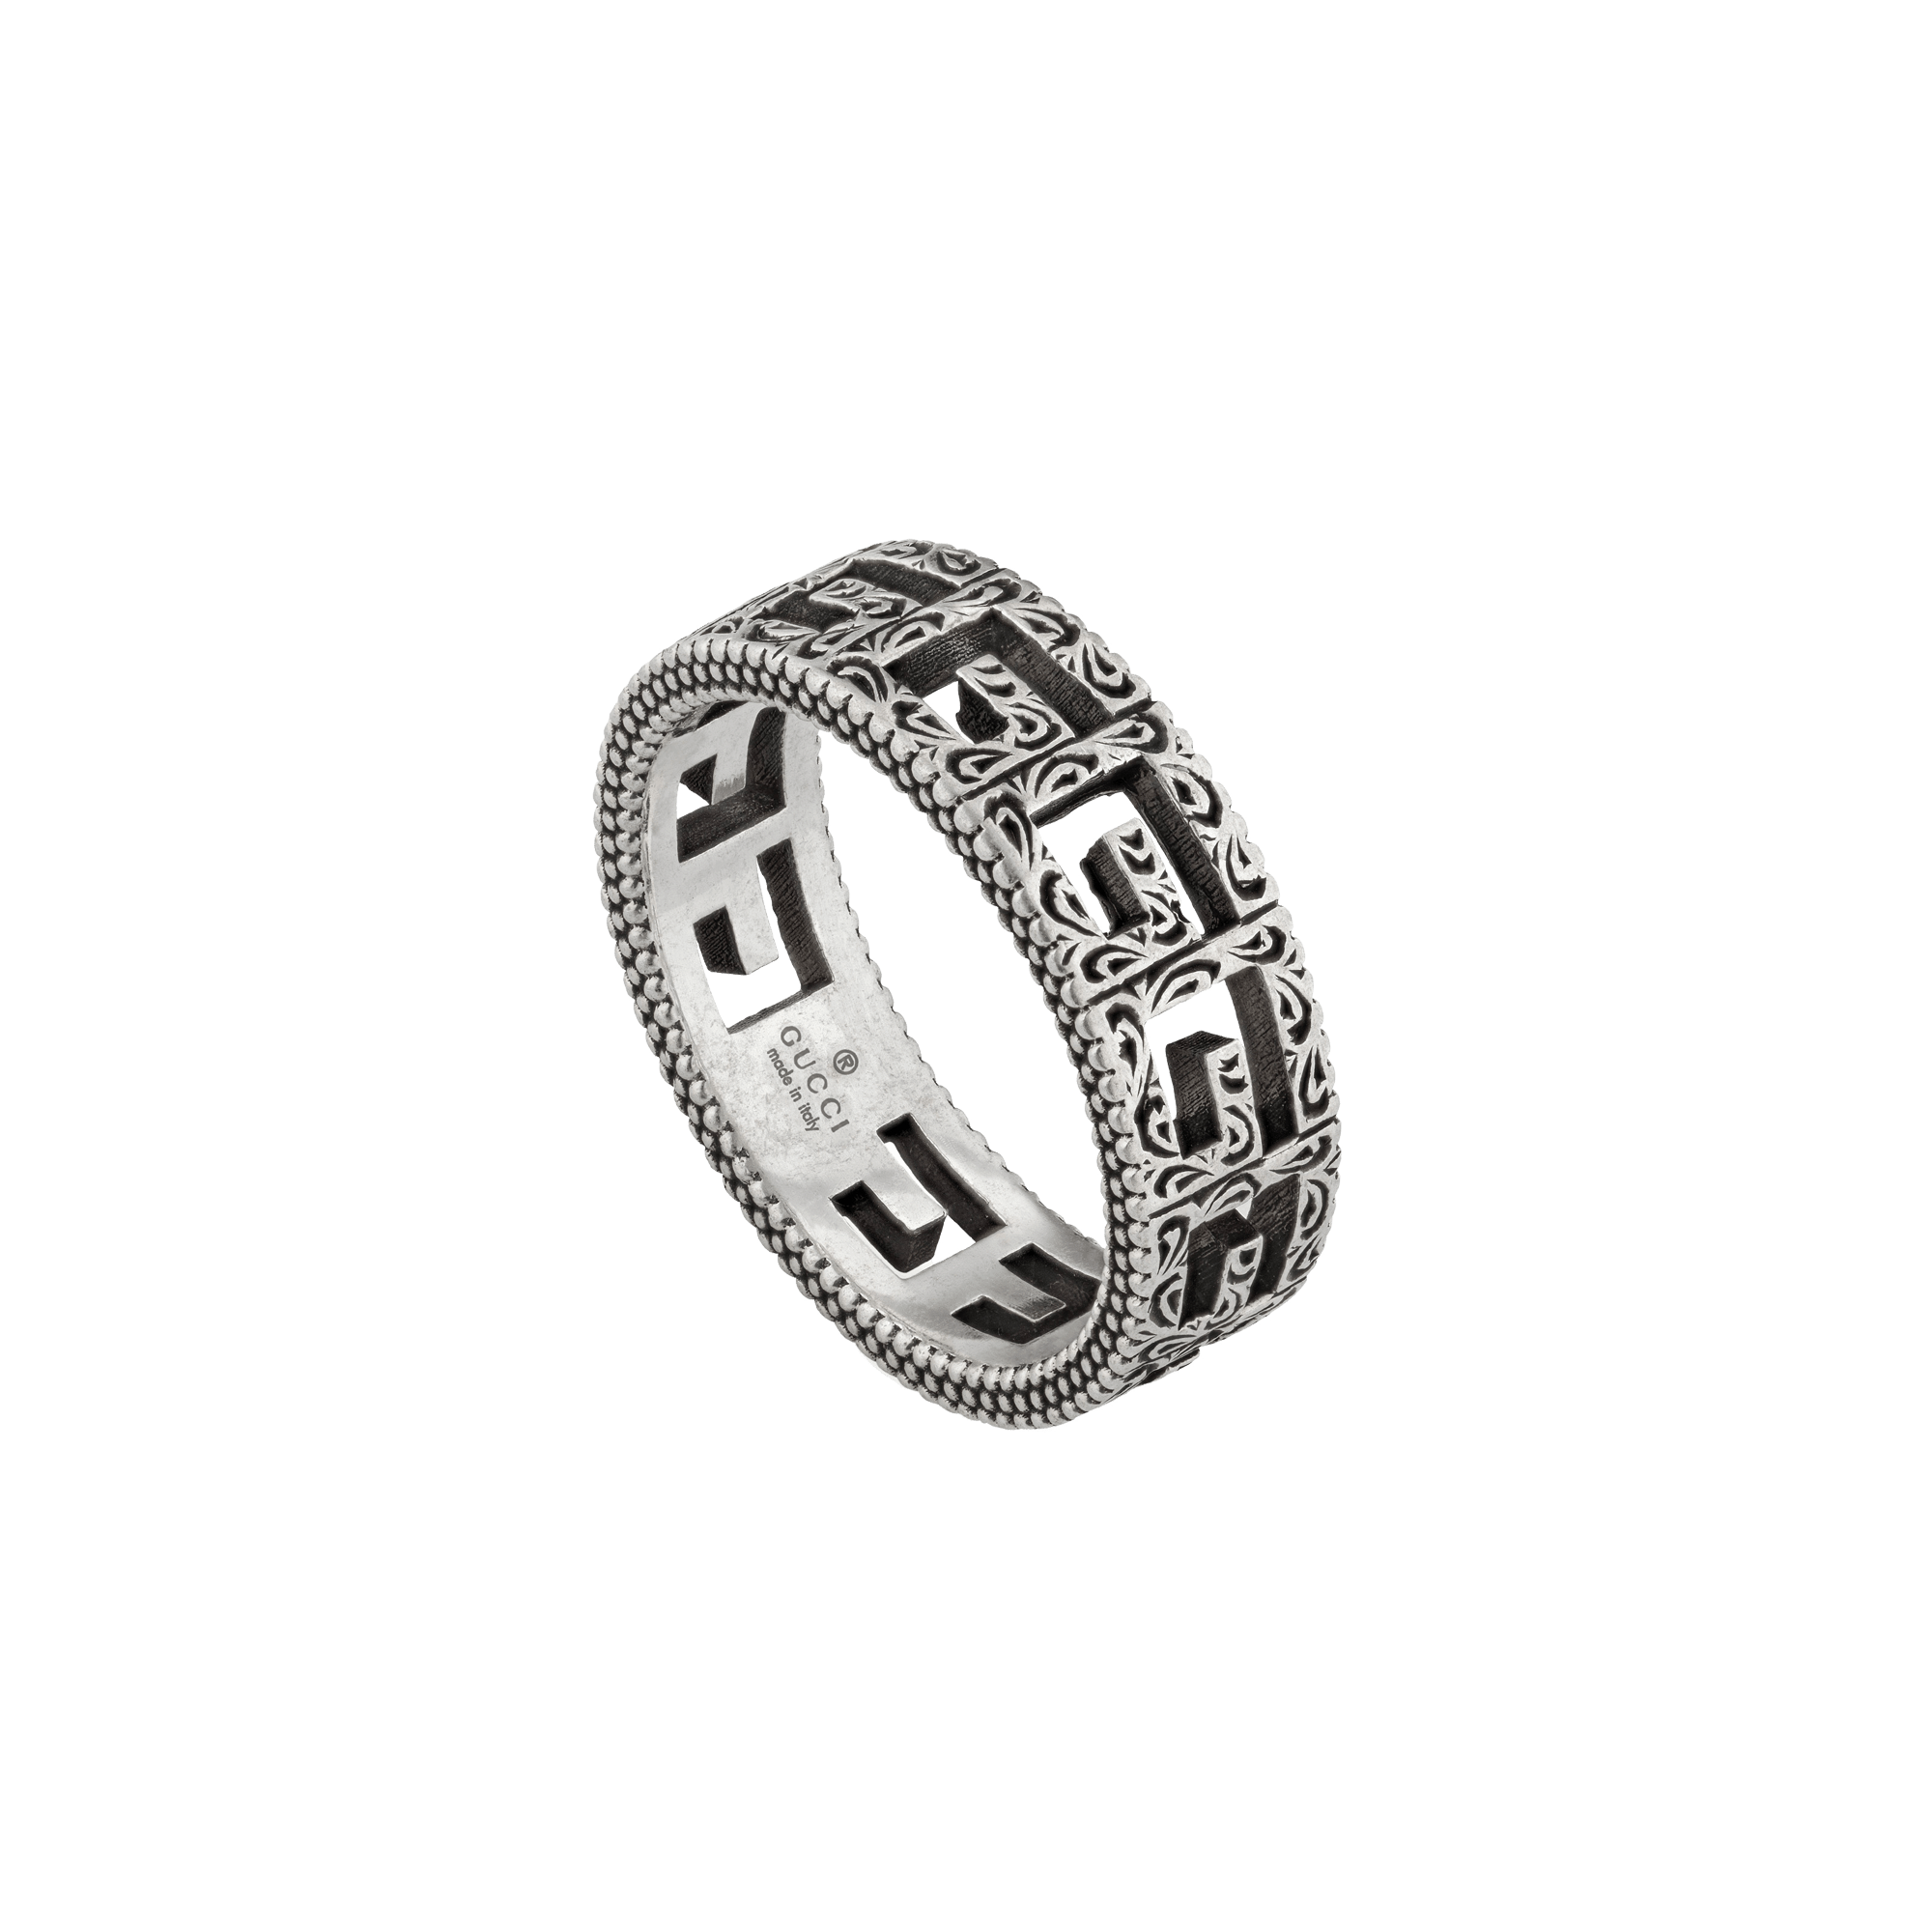 GUCCI Silver ring with Square G argento anello gucci sconto discount